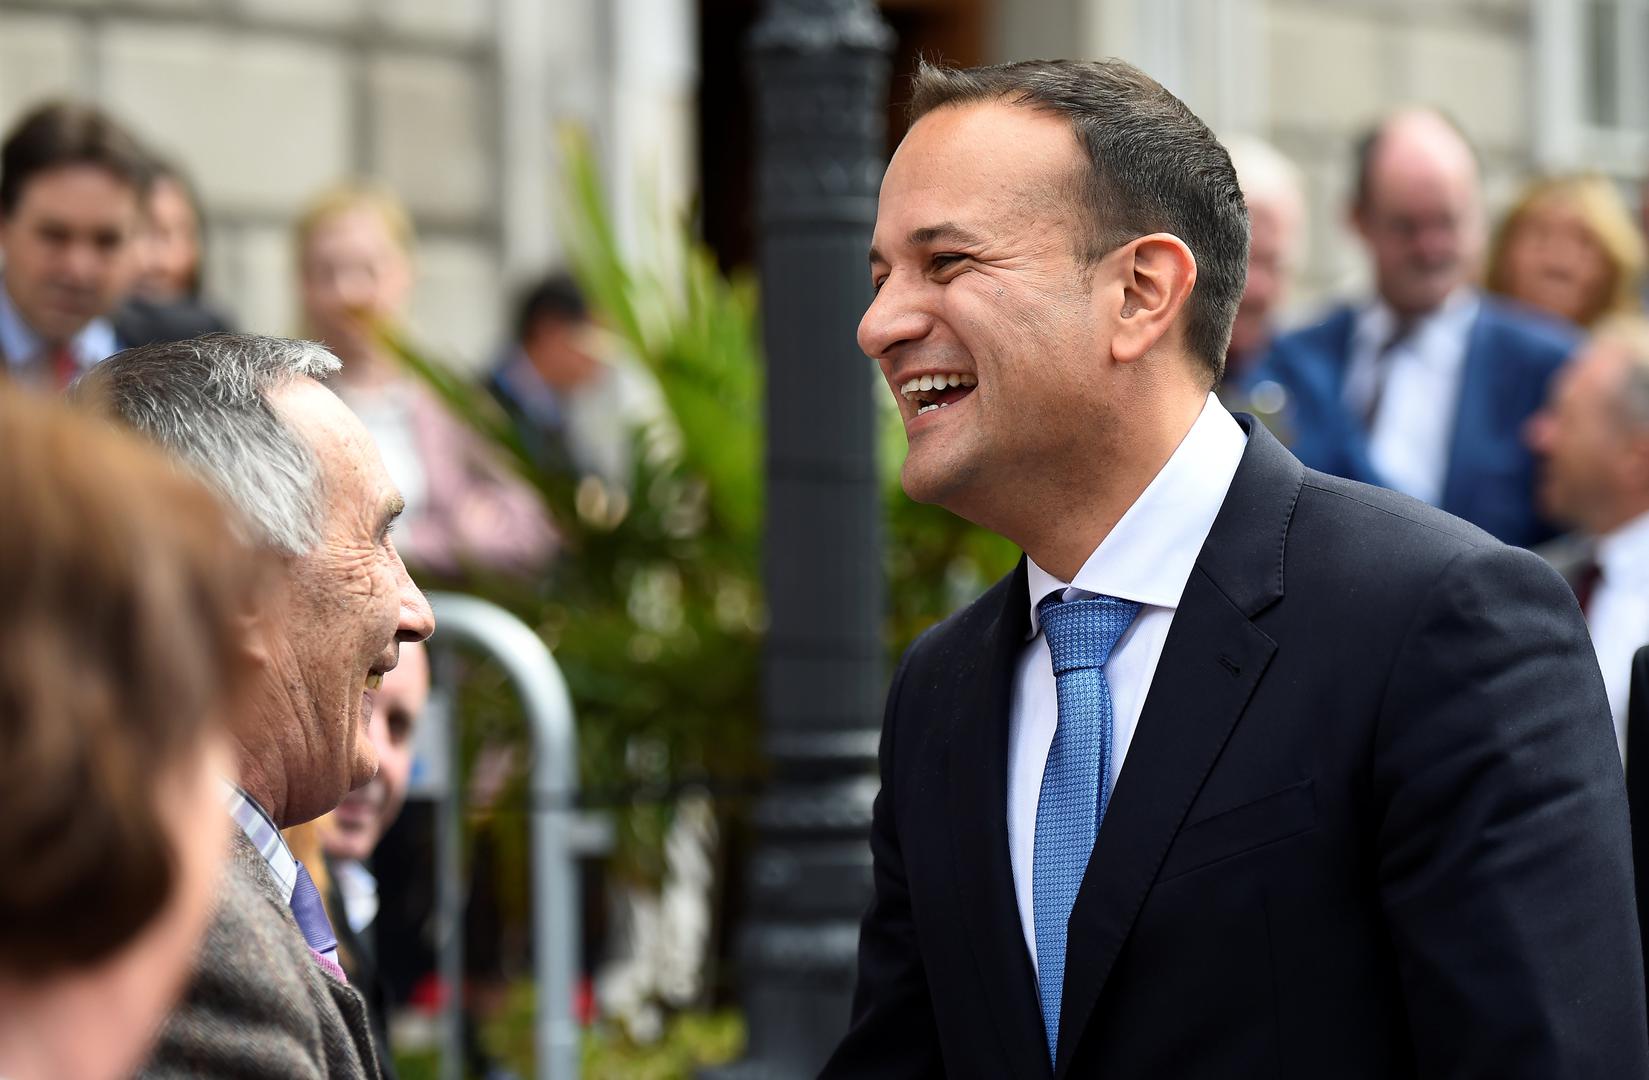 Leo Varadkar je prije dvije godine bio prvi član irske vlade koji je javno priznao da je homoseksualac